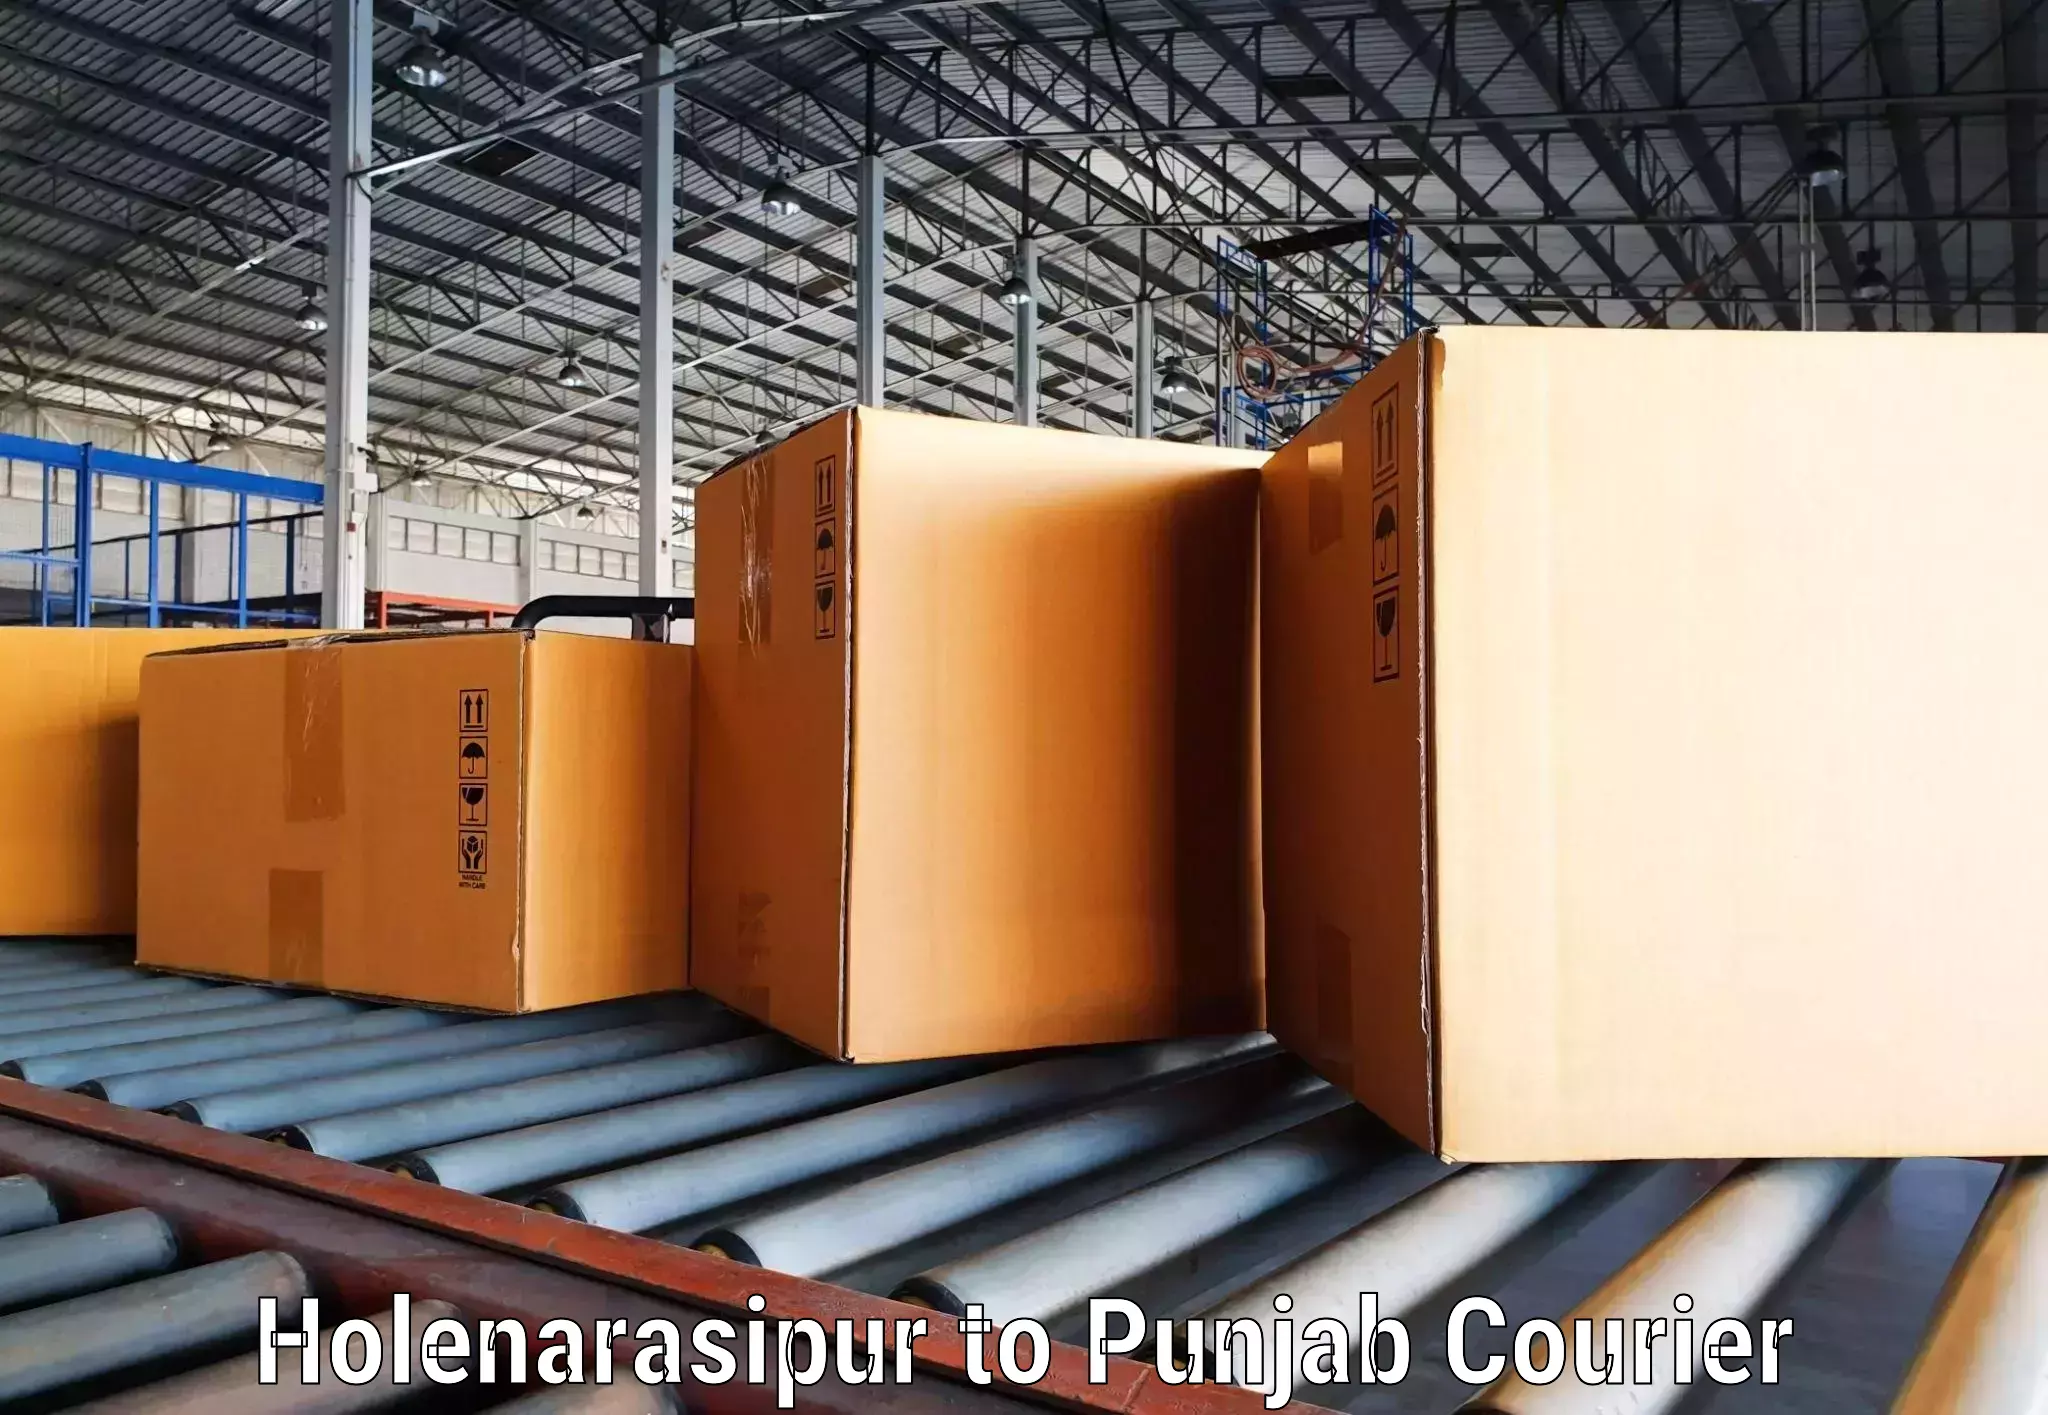 Modern courier technology Holenarasipur to Khanna